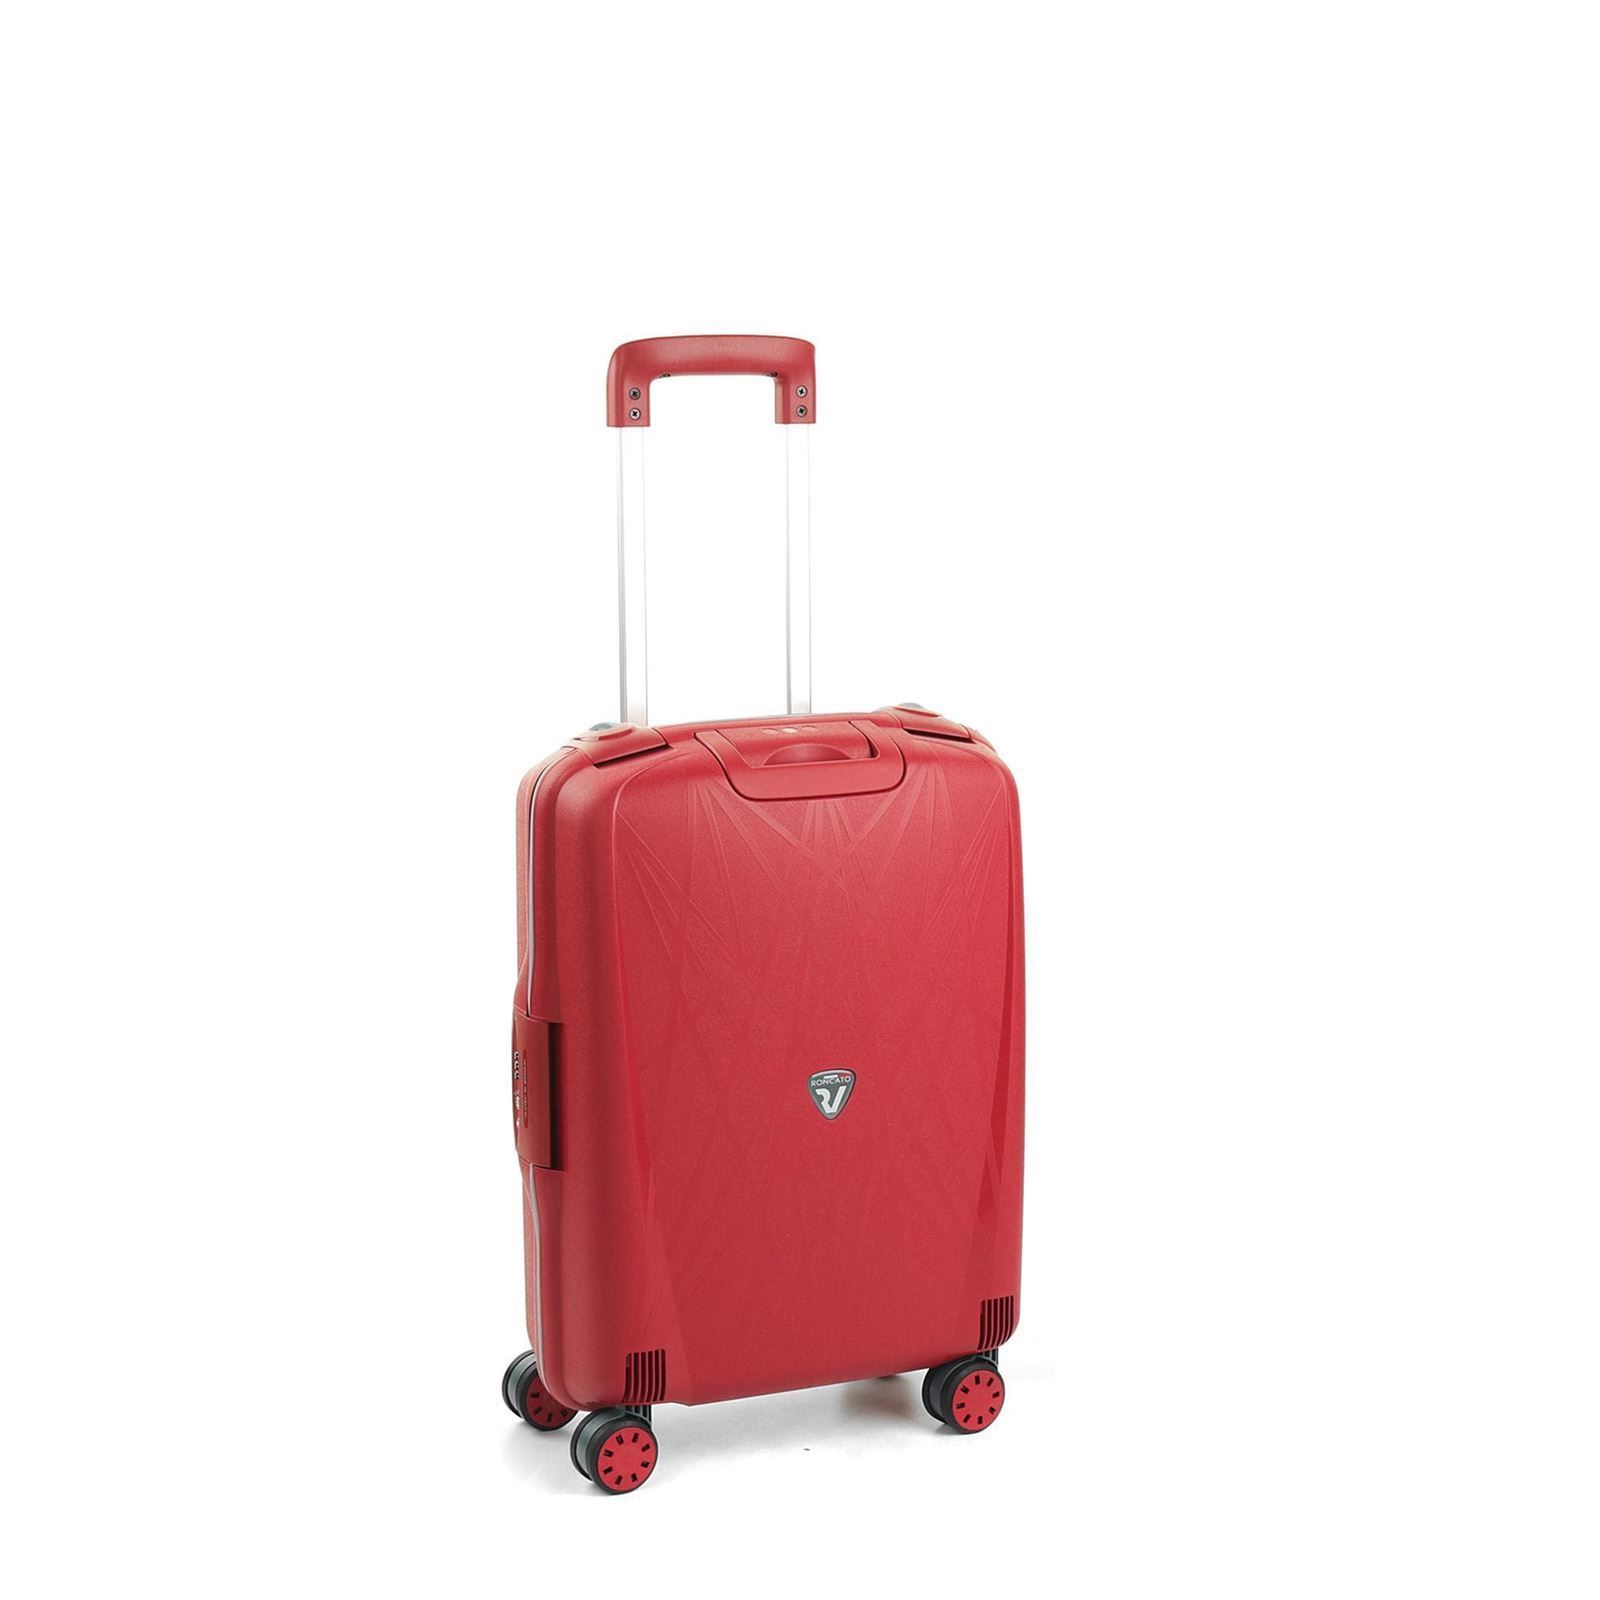 Contracción diario Otoño maleta cabina Roncato light spinner 4 ruedas roja